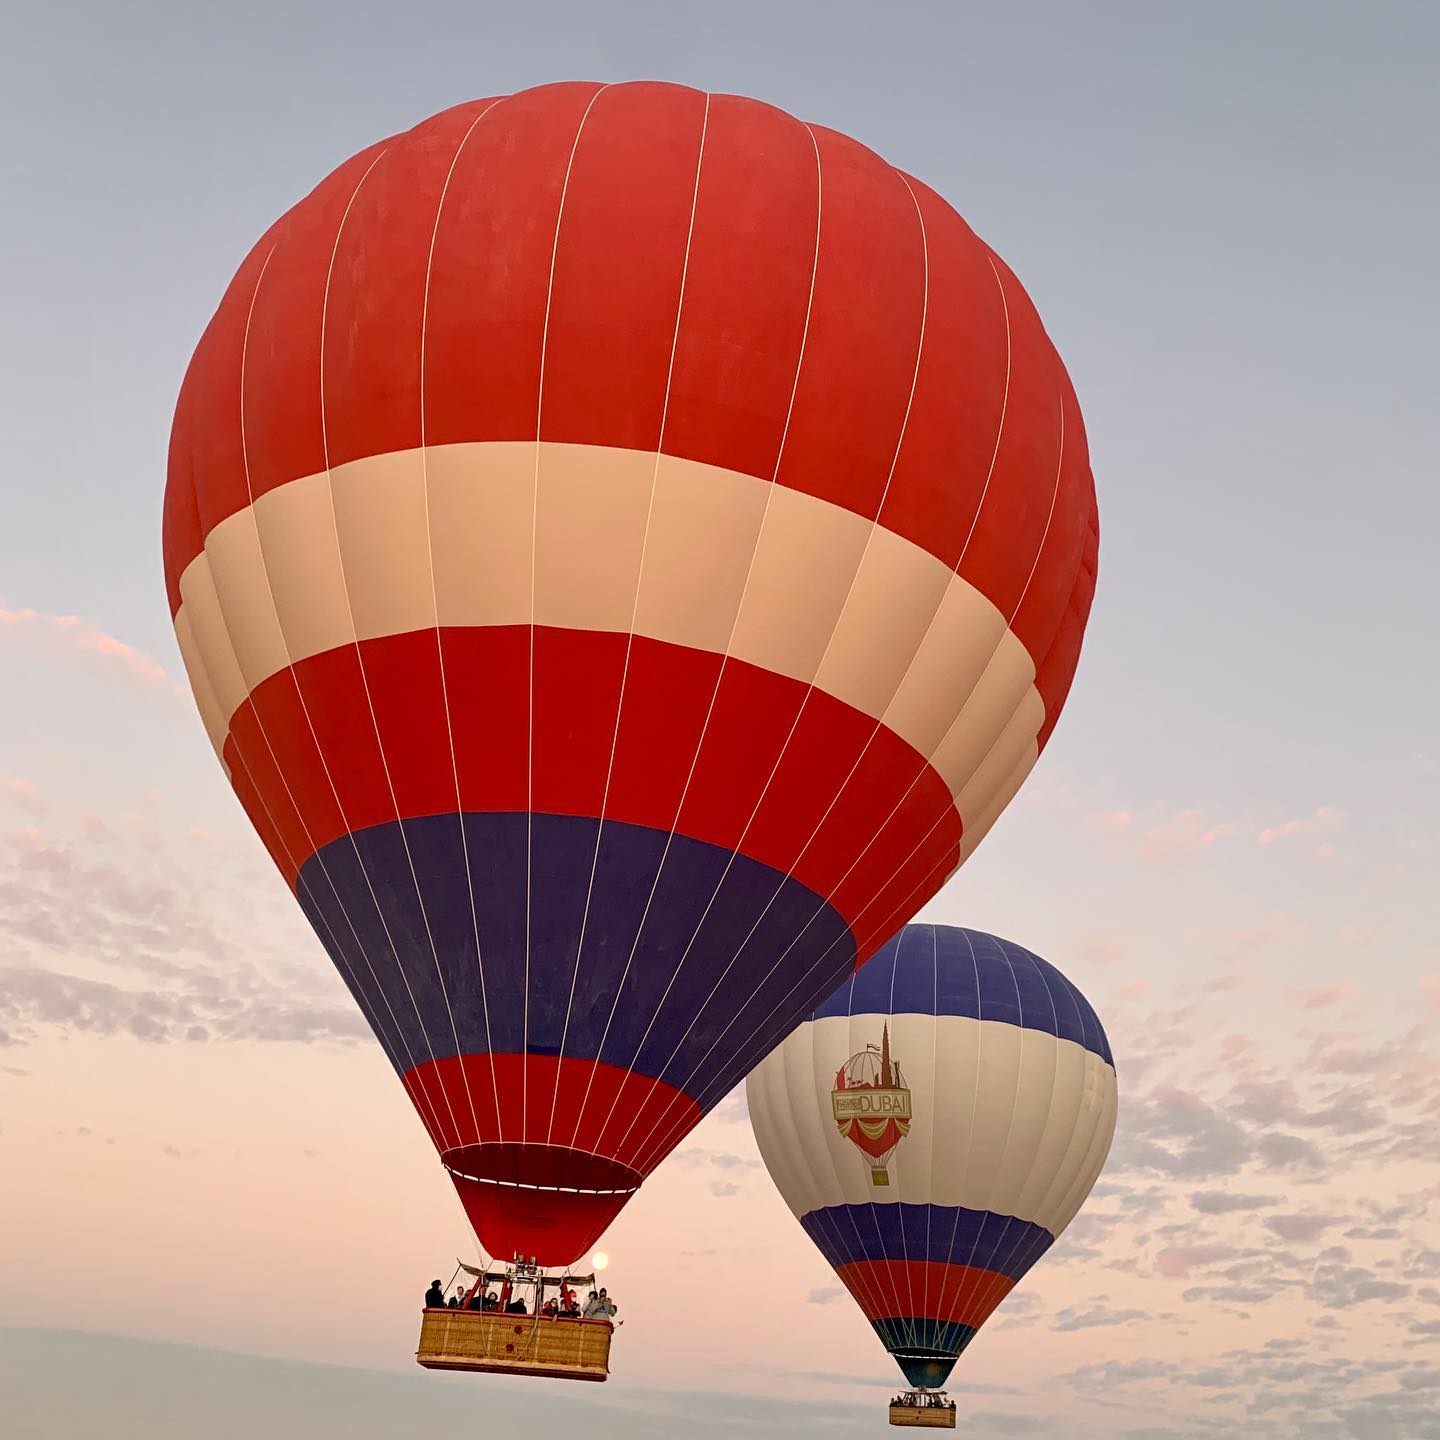 Dubai Hot – Air Balloon Flight